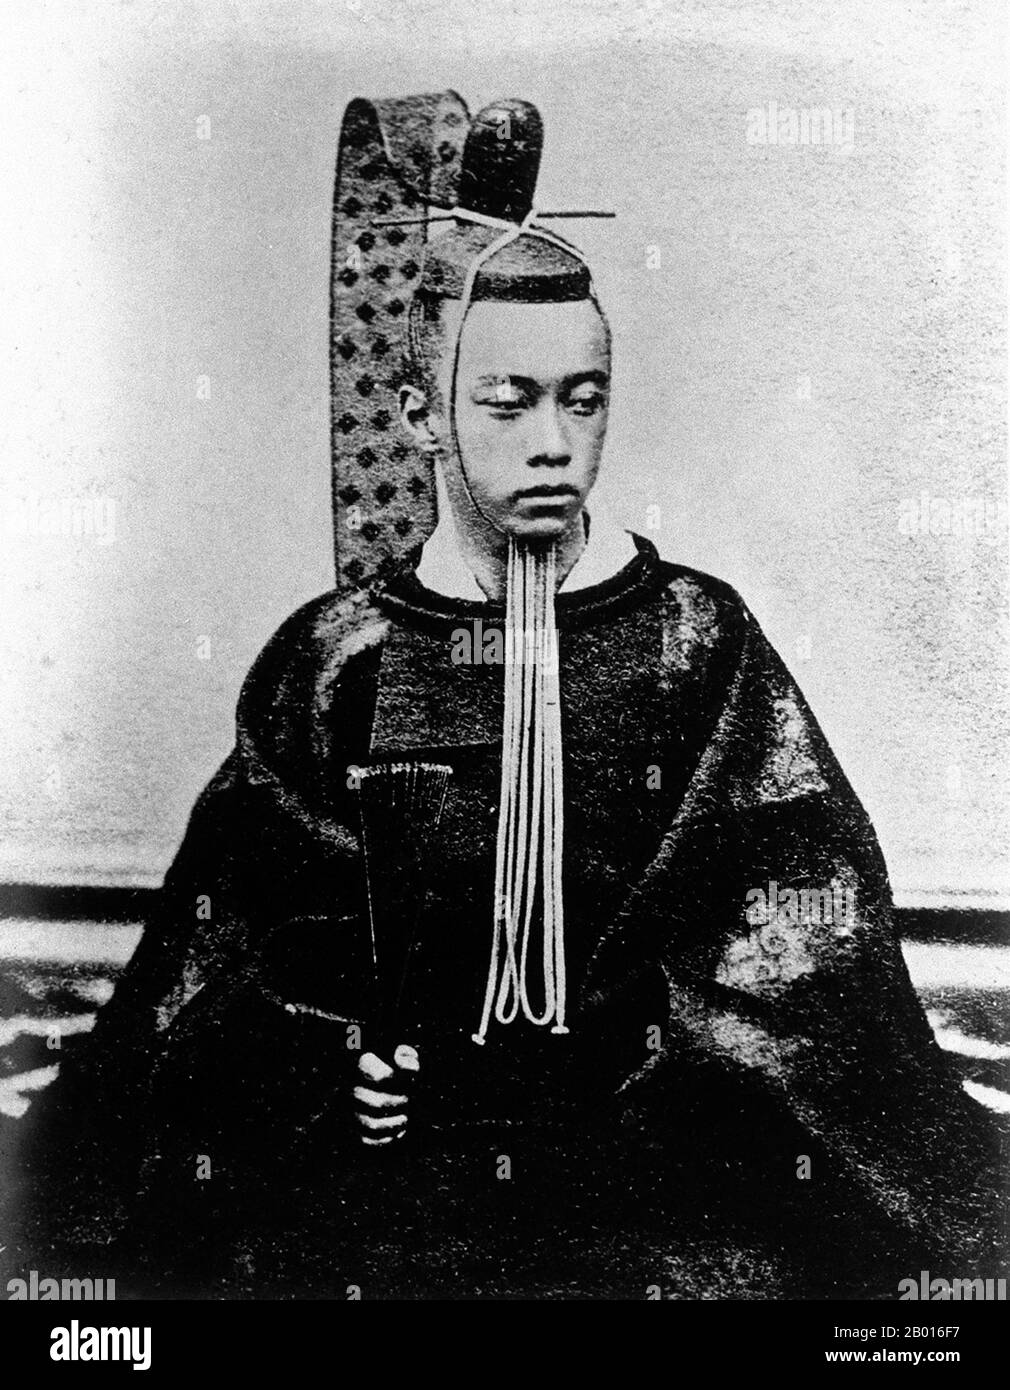 Japan: Tokugawa Akitake (26. Oktober 1853 - 3. Juli 1910), letzter Daimyo von Mito Domain und jüngerer Halbbruder des letzten Shogun Tokugawa Yoshinobu. Hochformat, 1867. Tokugawa Akitake, geborene Matsudaira Yohachimaro, war der 18. Sohn von Tokugawa Nariaki. Ursprünglich herr von Aizu, wurde er herr von Shimizu vor seiner Abreise nach Frankreich. Akitake führte die japanische Delegation zur Weltausstellung 1867 in Paris, wo Japan einen eigenen Pavillon hatte. Er blieb in Frankreich, um seine Studien fortzusetzen, musste aber mit der Meiji-Restauration von 1868 nach Japan zurückkehren. Er wurde 1876 als Abgesandter in die Vereinigten Staaten geschickt. Stockfoto